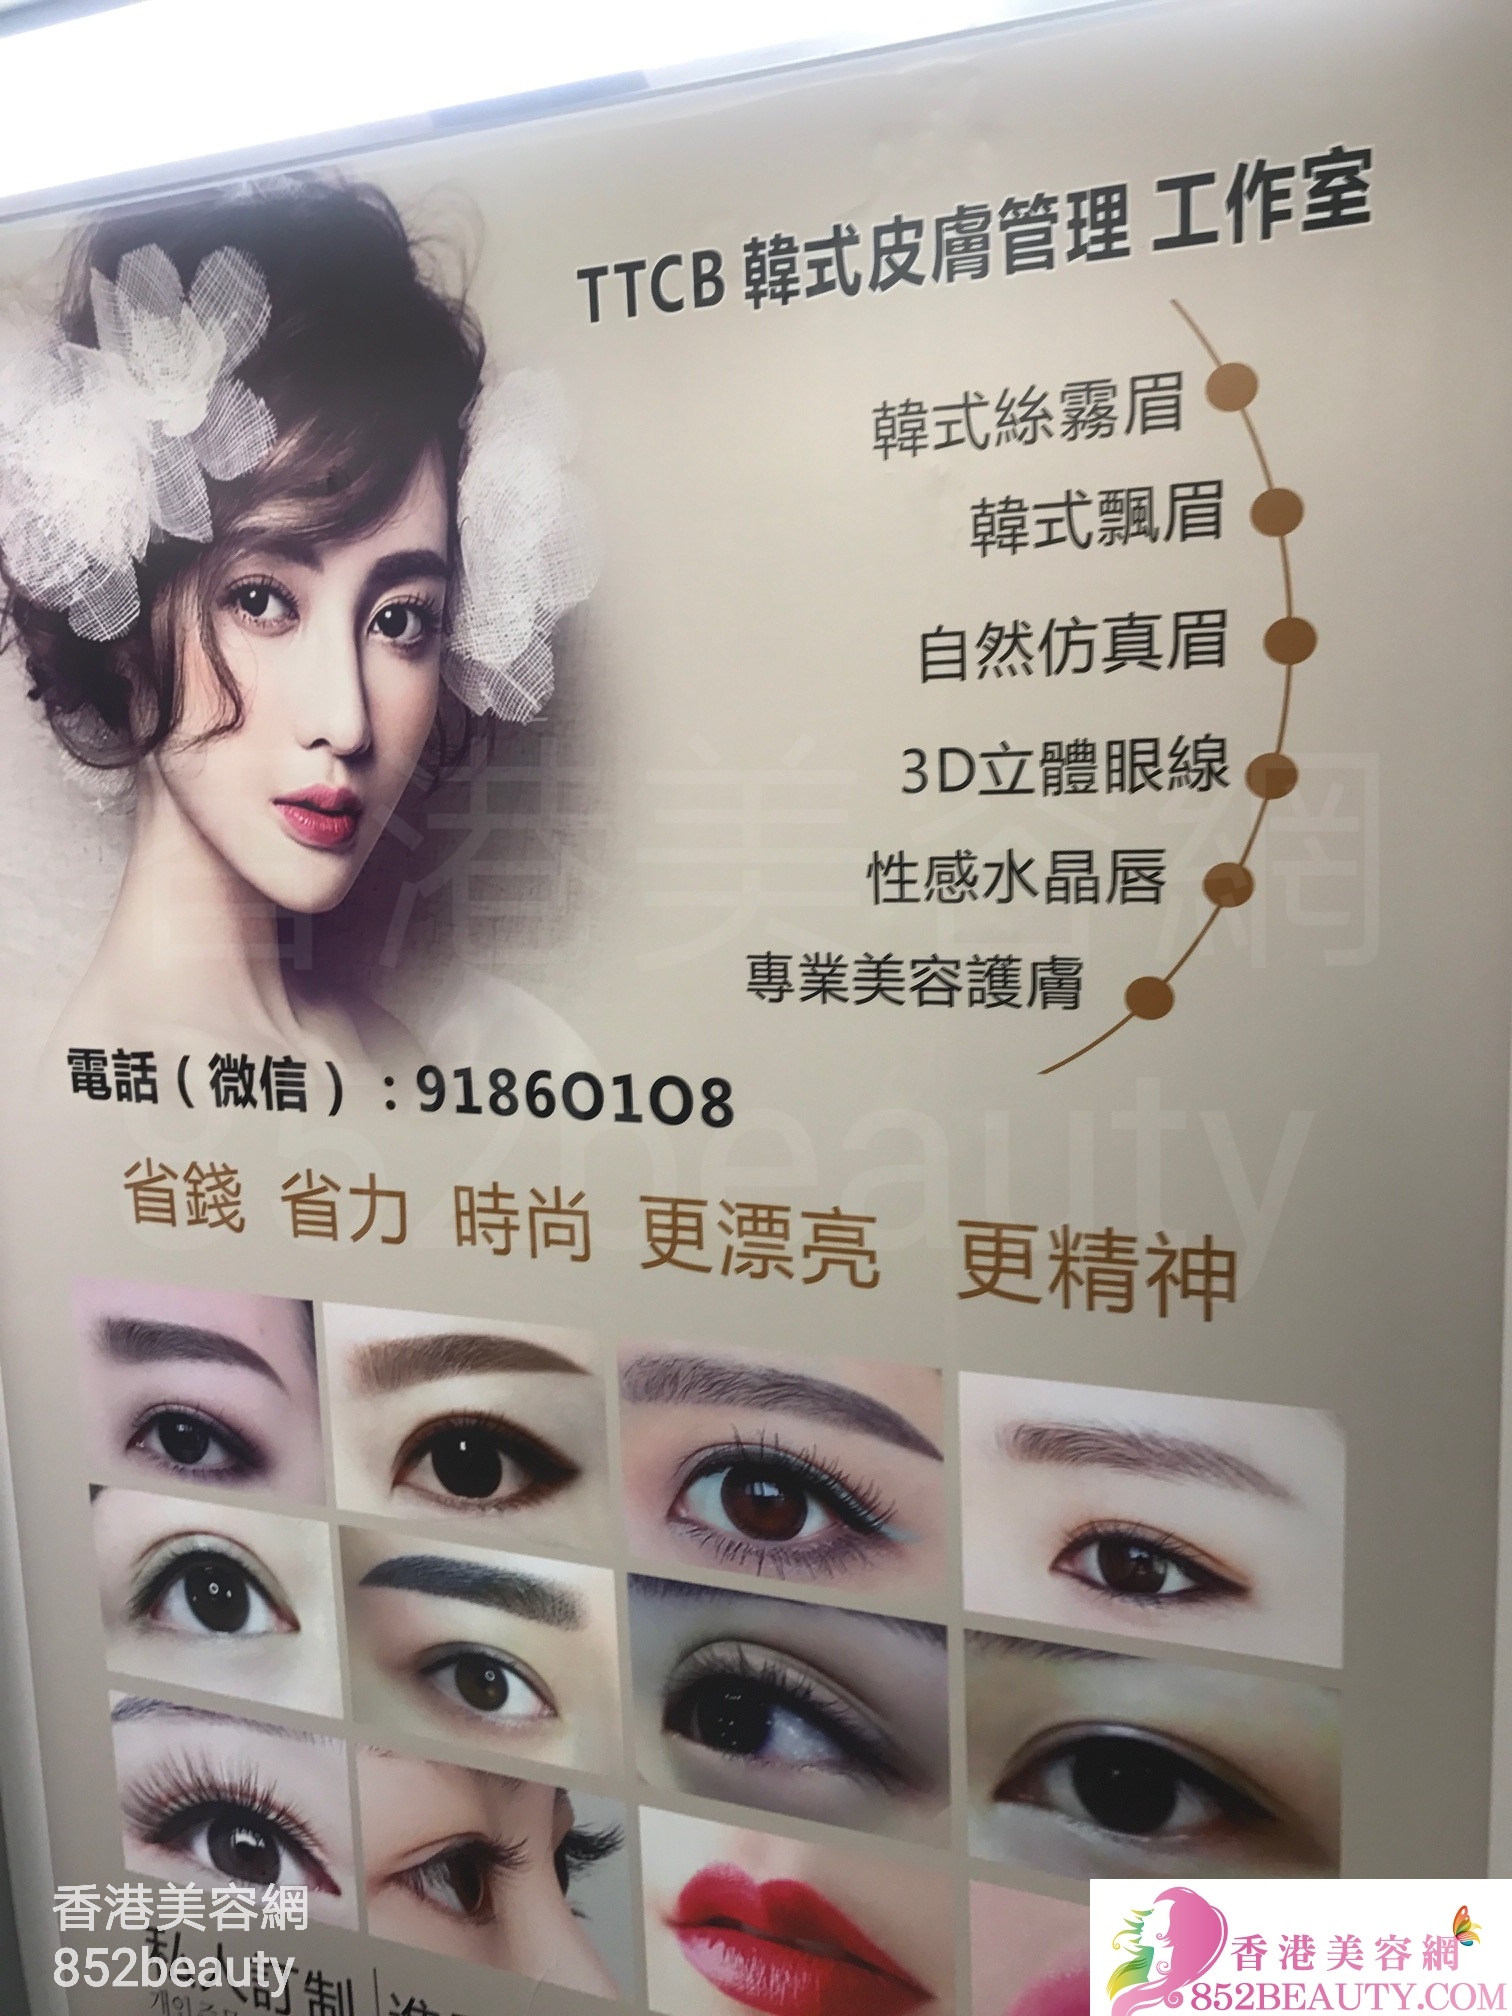 美容院: TTCB 韓式皮膚管理 工作室